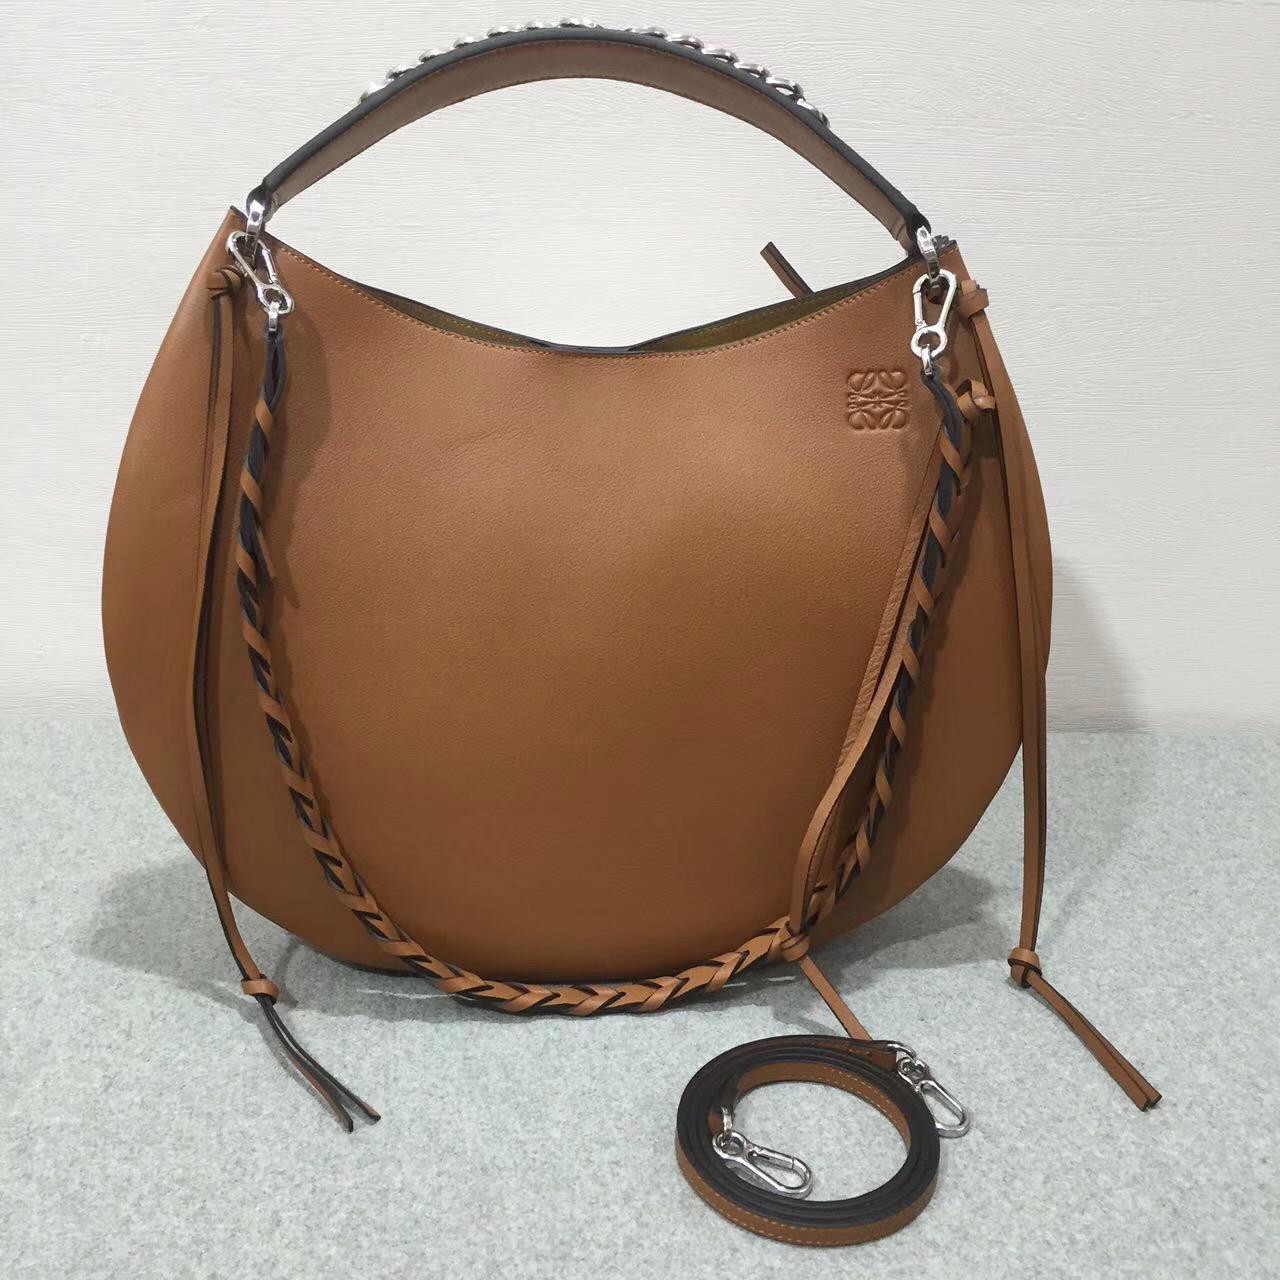 羅意威Loewe Fortune hobo bag系列限量版半月包 進口細紋棕色小牛皮